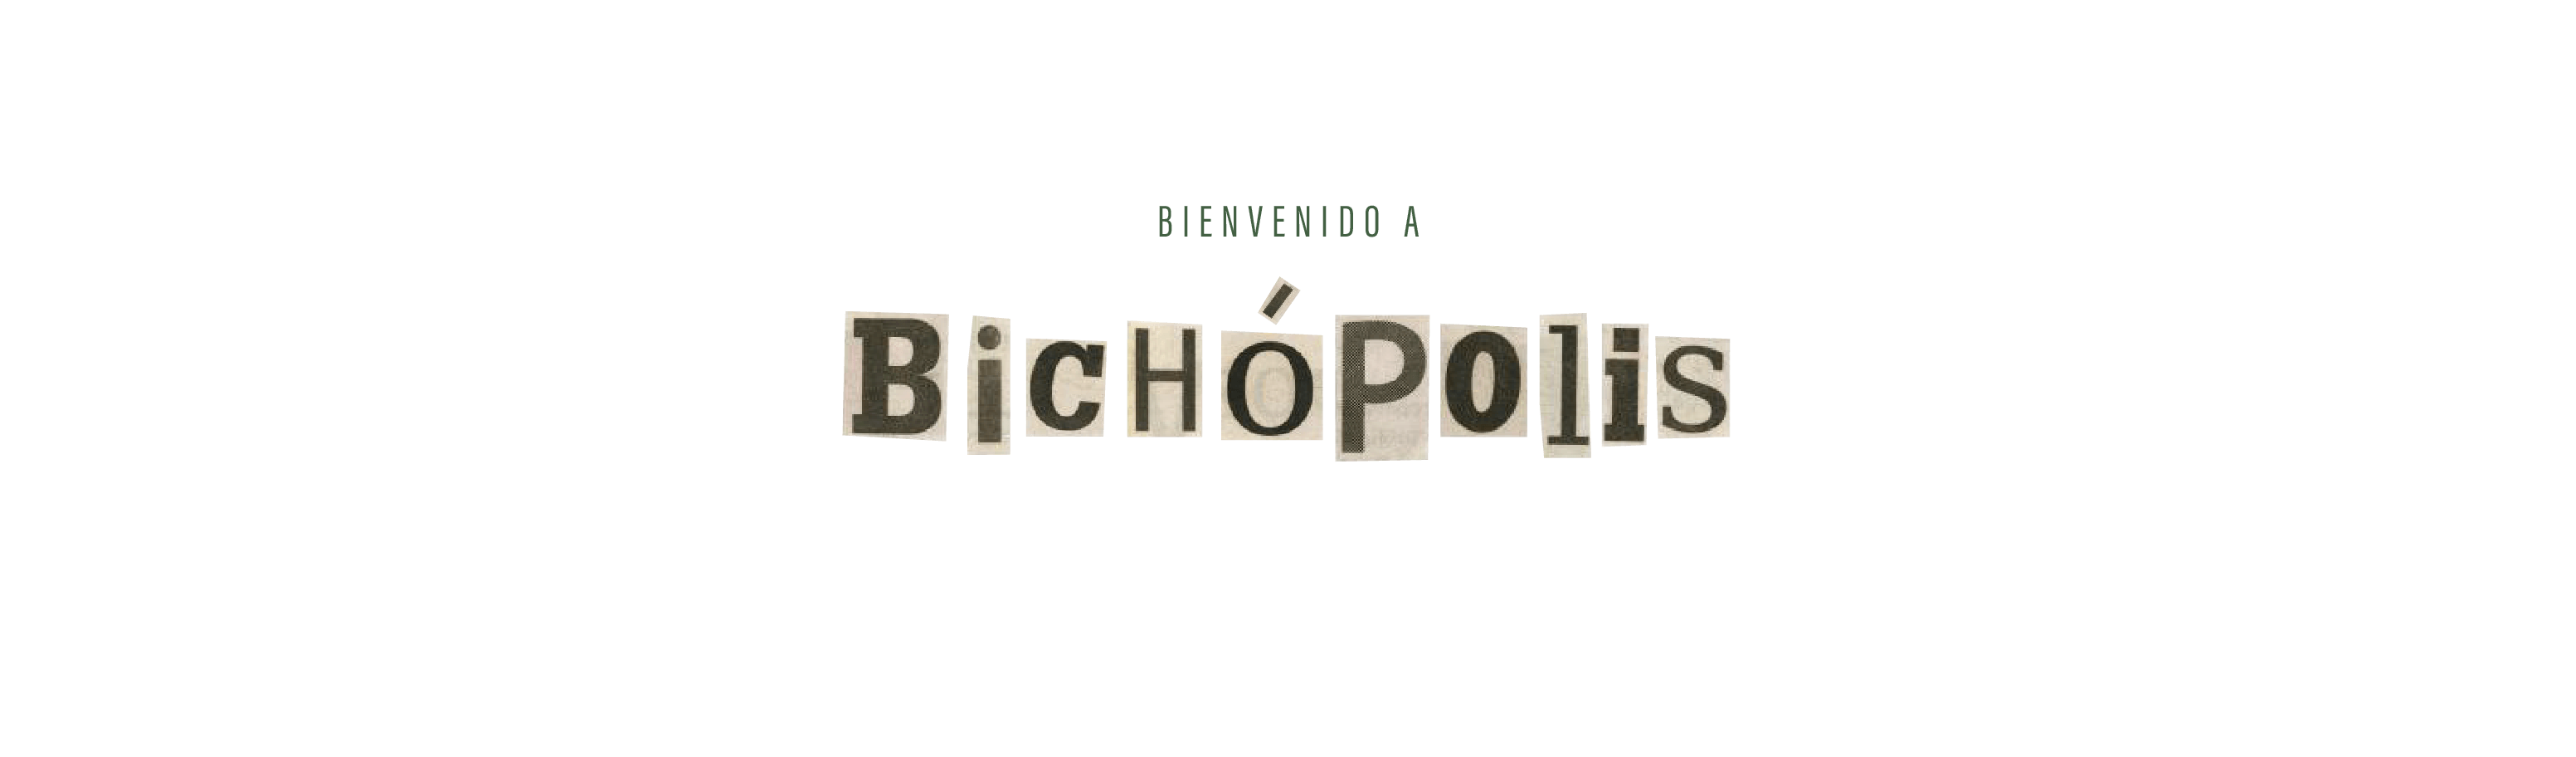 Bichopolis